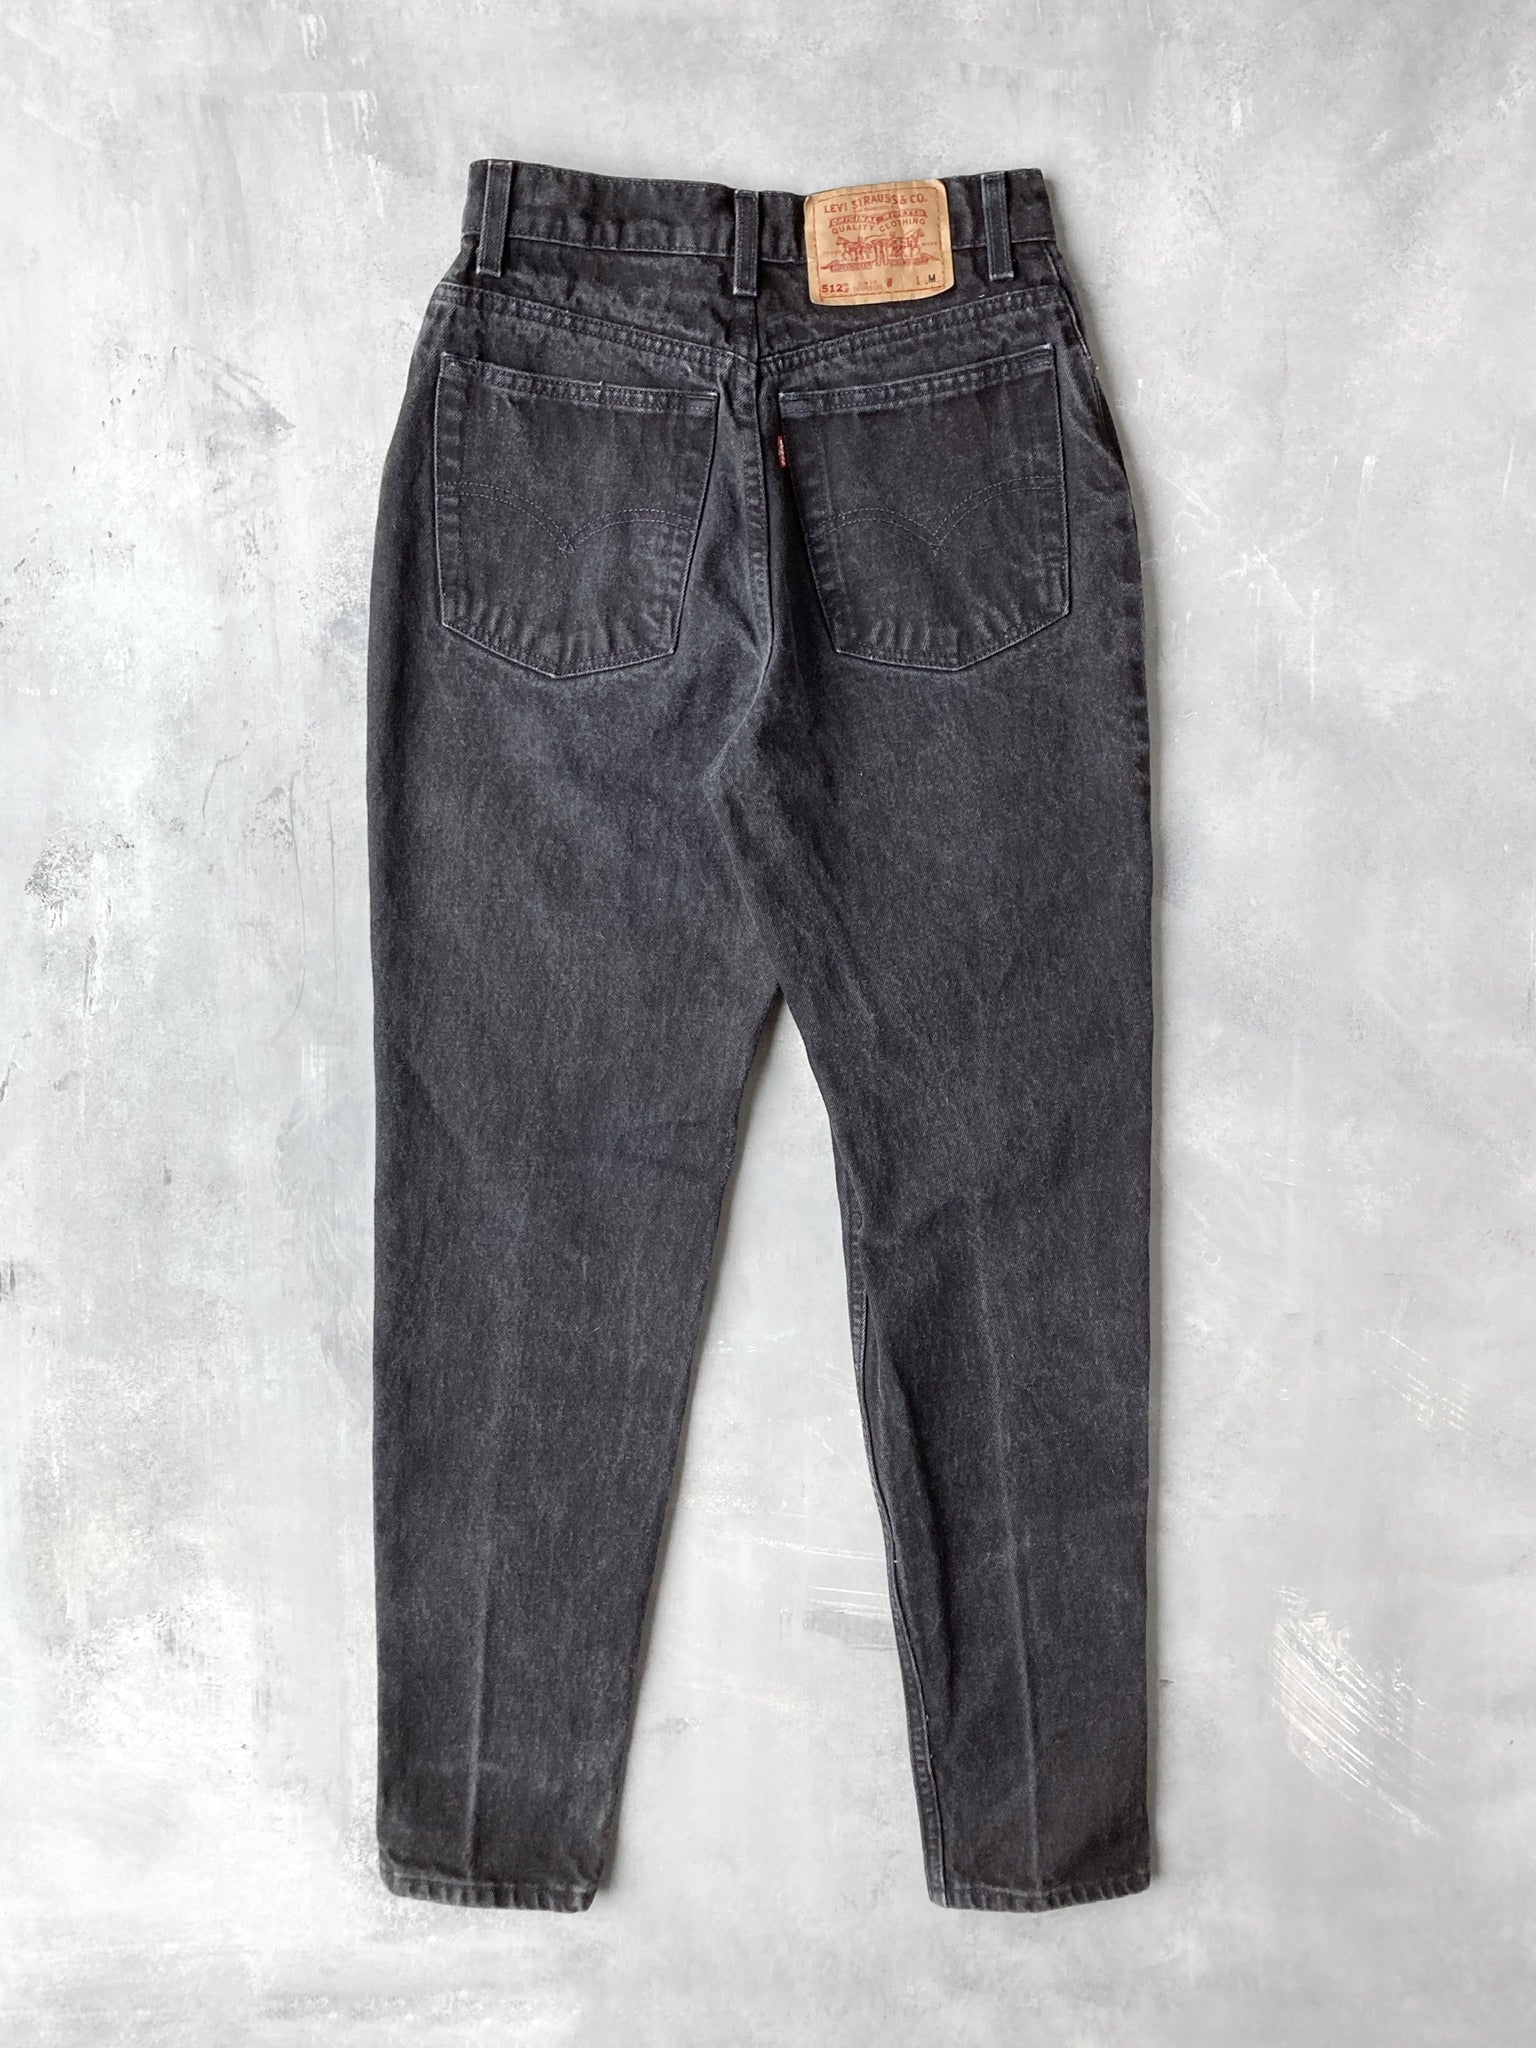 Levi's 512 Slim Fit Jeans 90's- Size 0 – Lot 1 Vintage